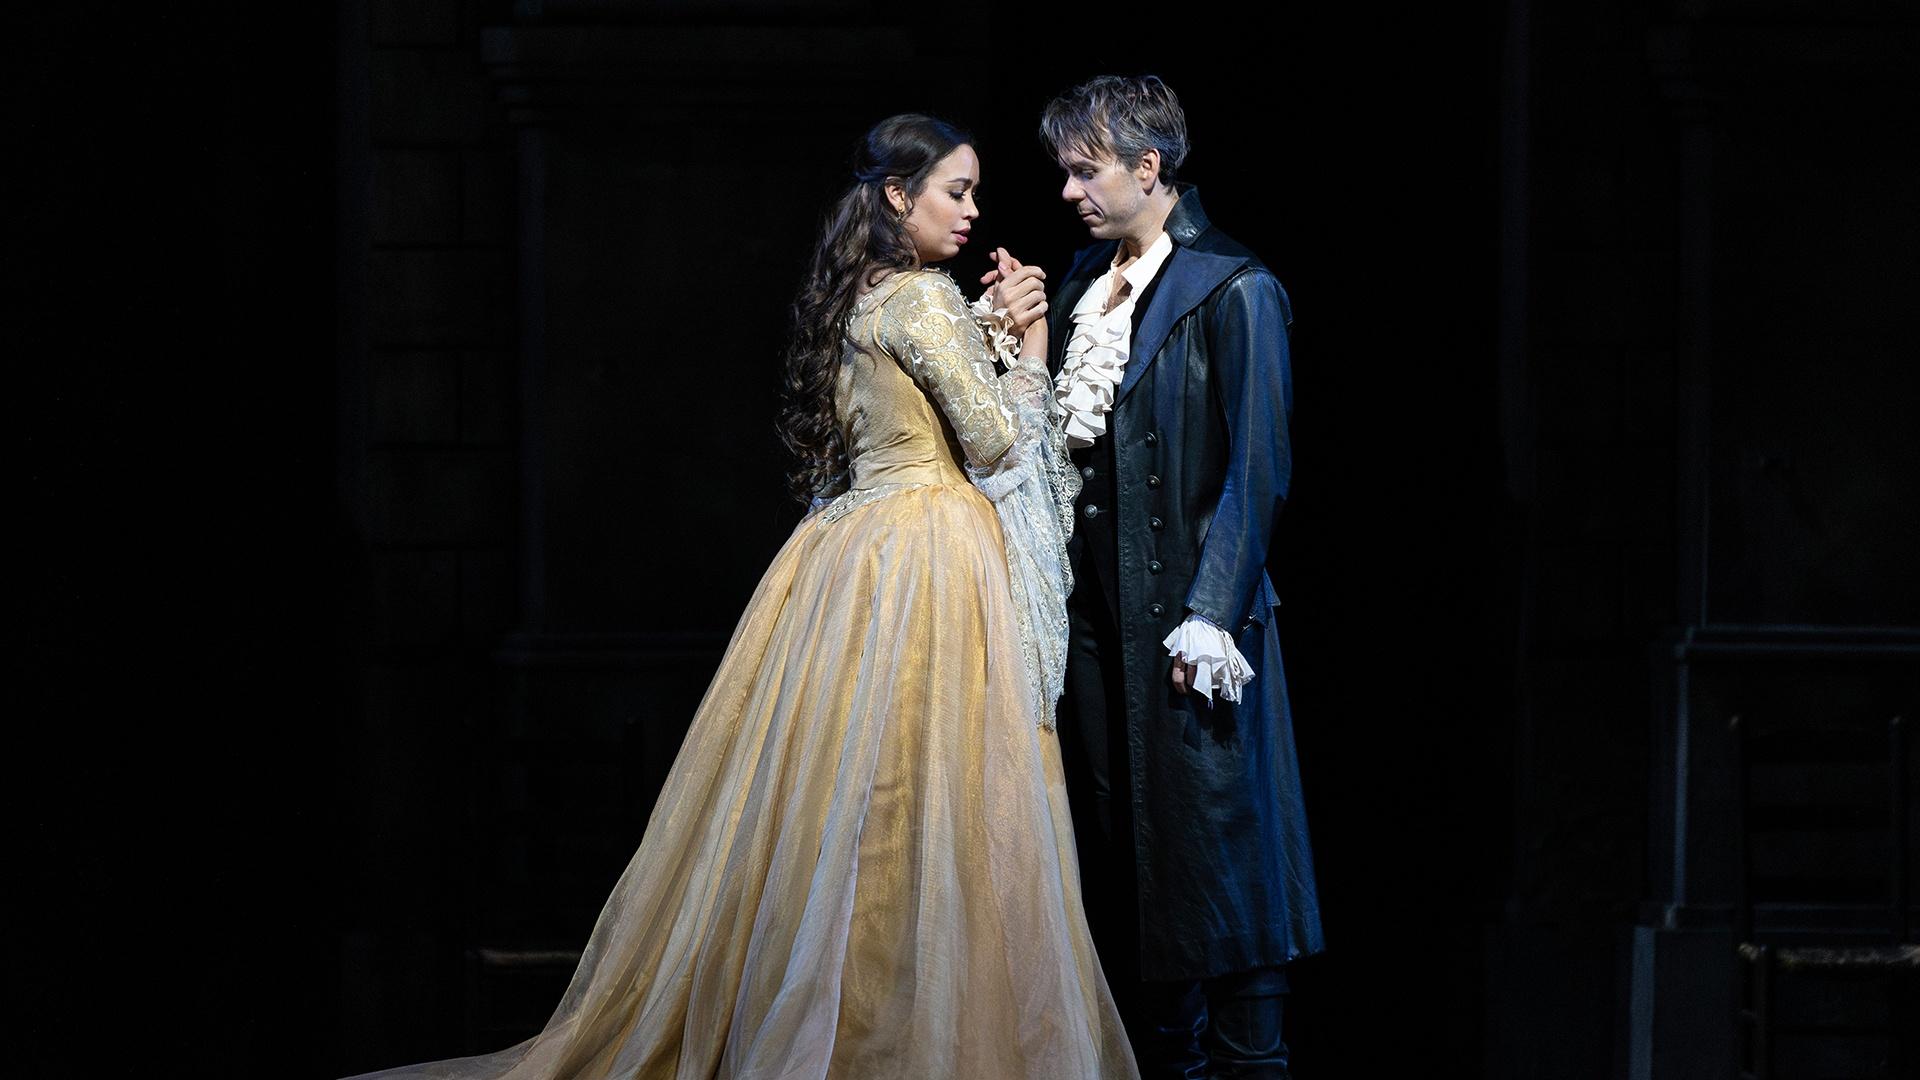 Great Performances at the Met: Roméo et Juliette